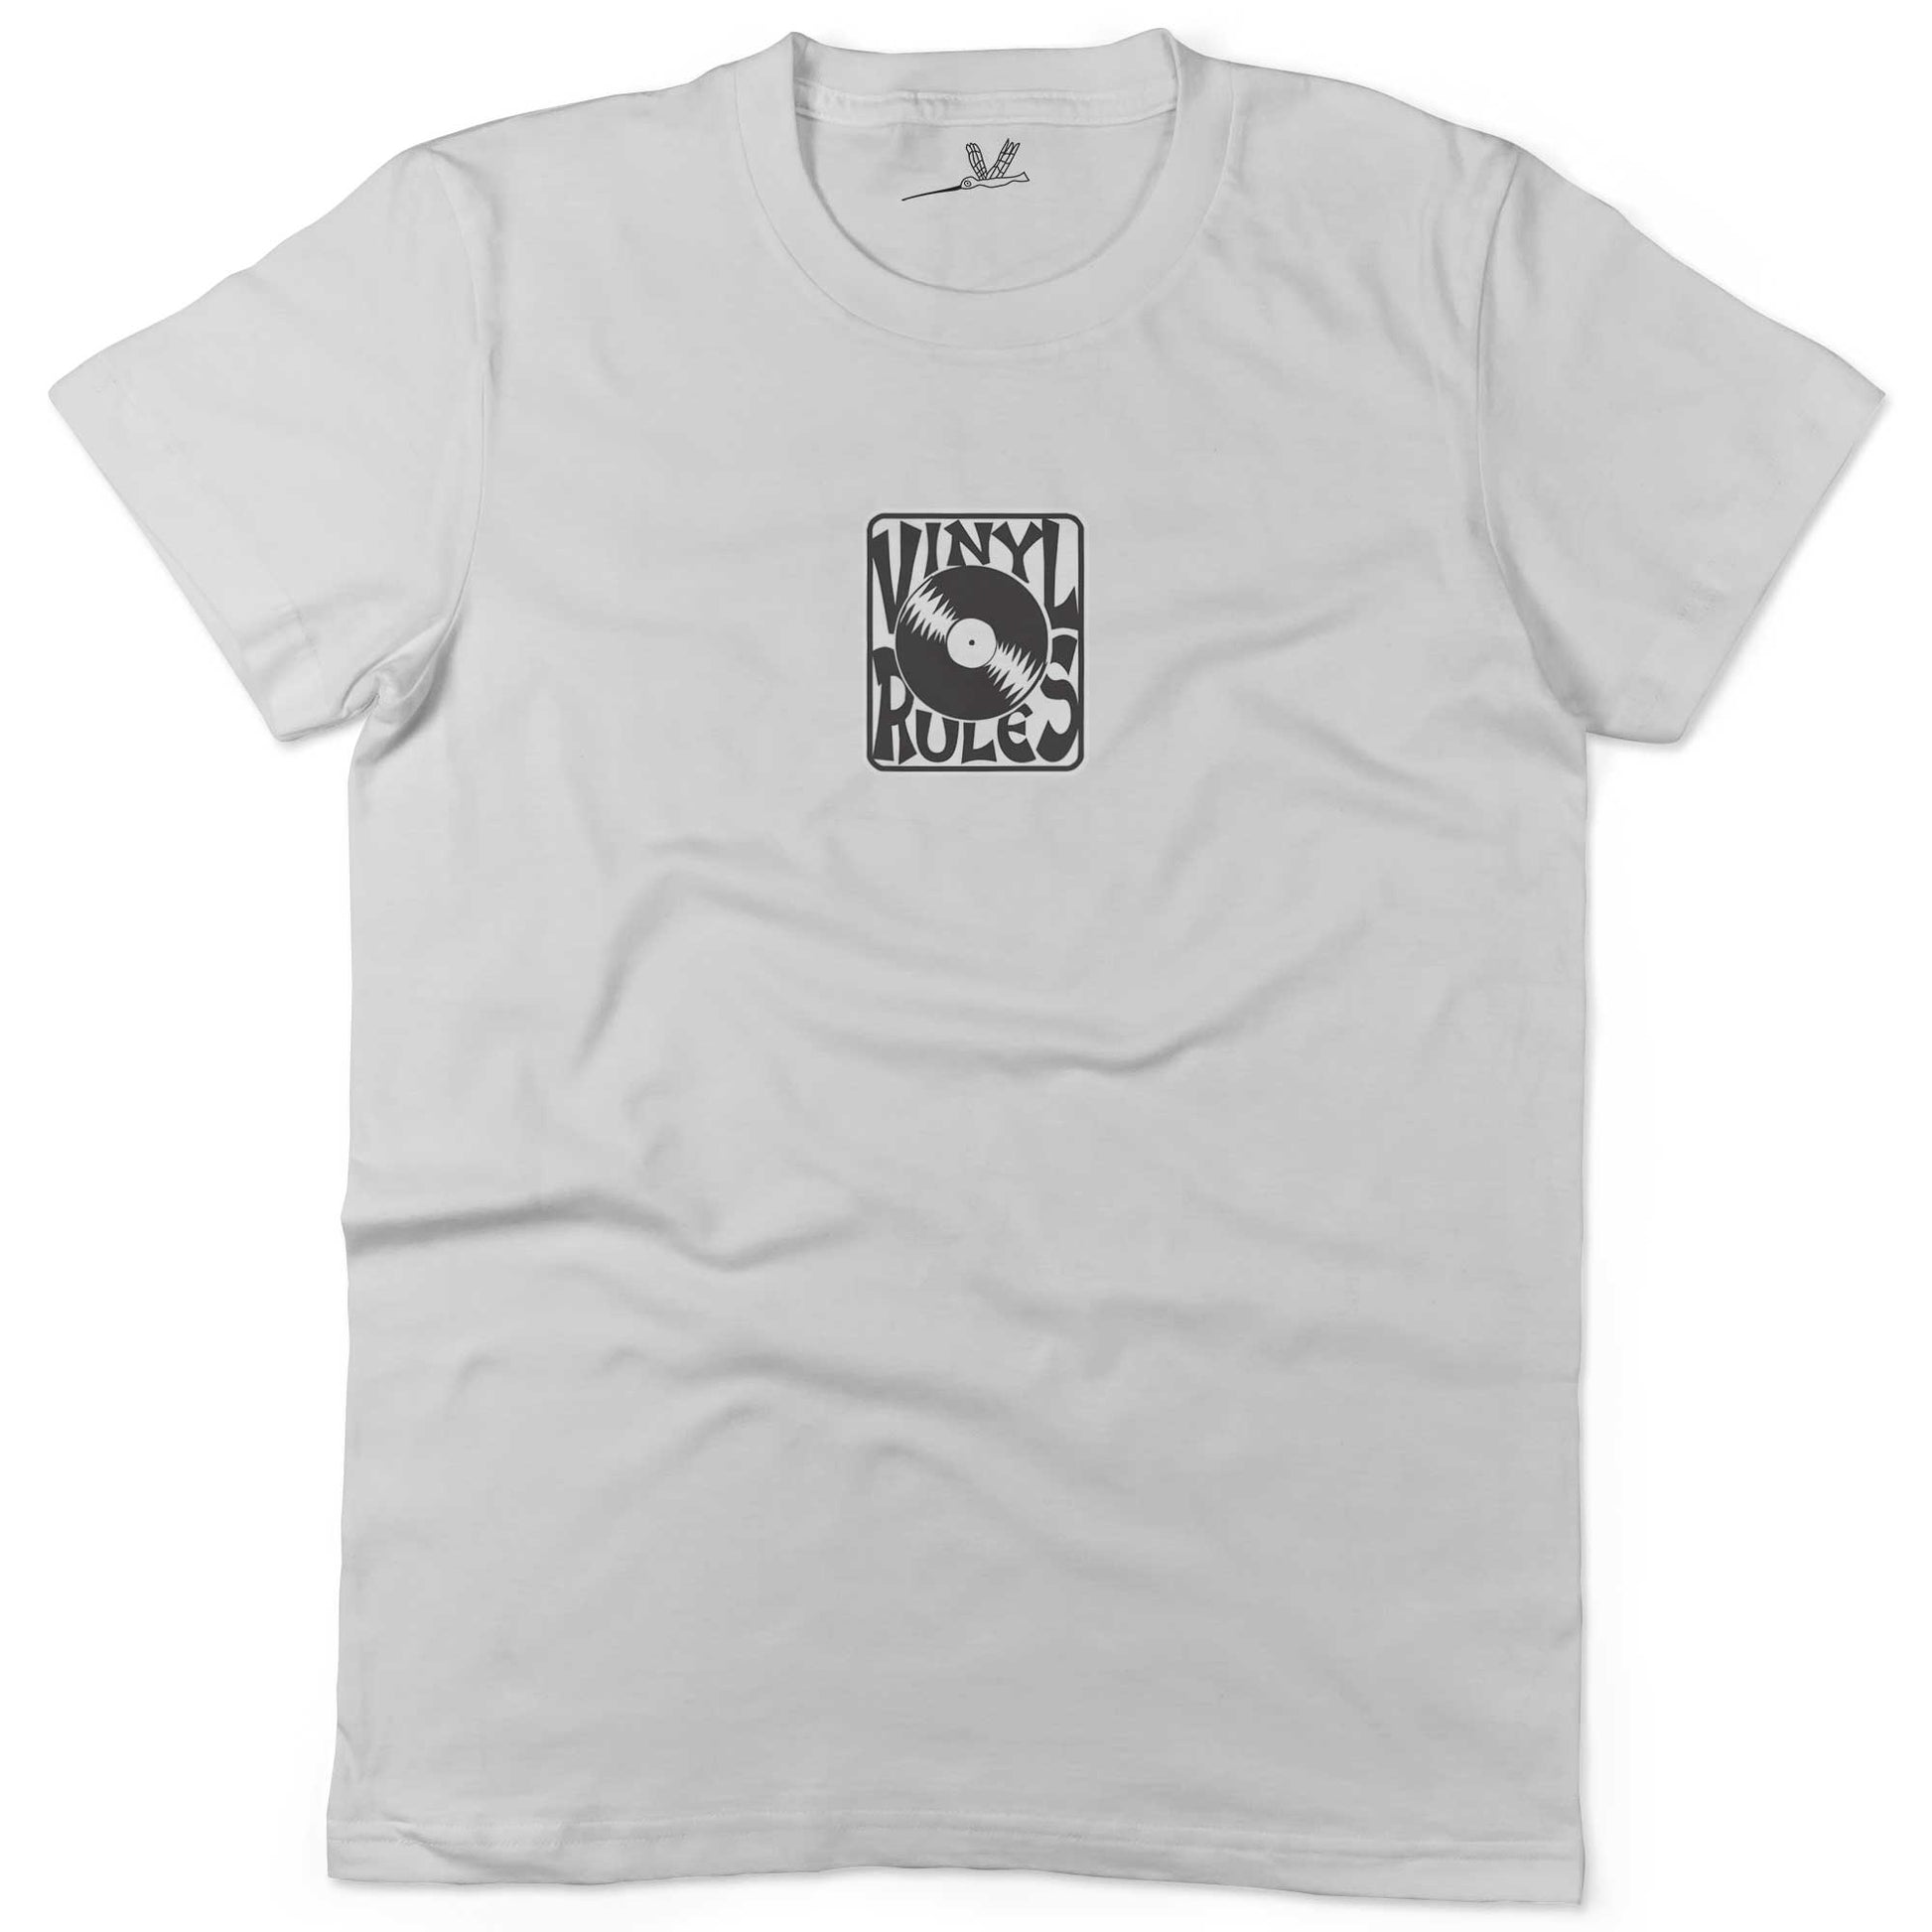 Vinyl Rules Unisex Or Women's Cotton T-shirt-White-Woman